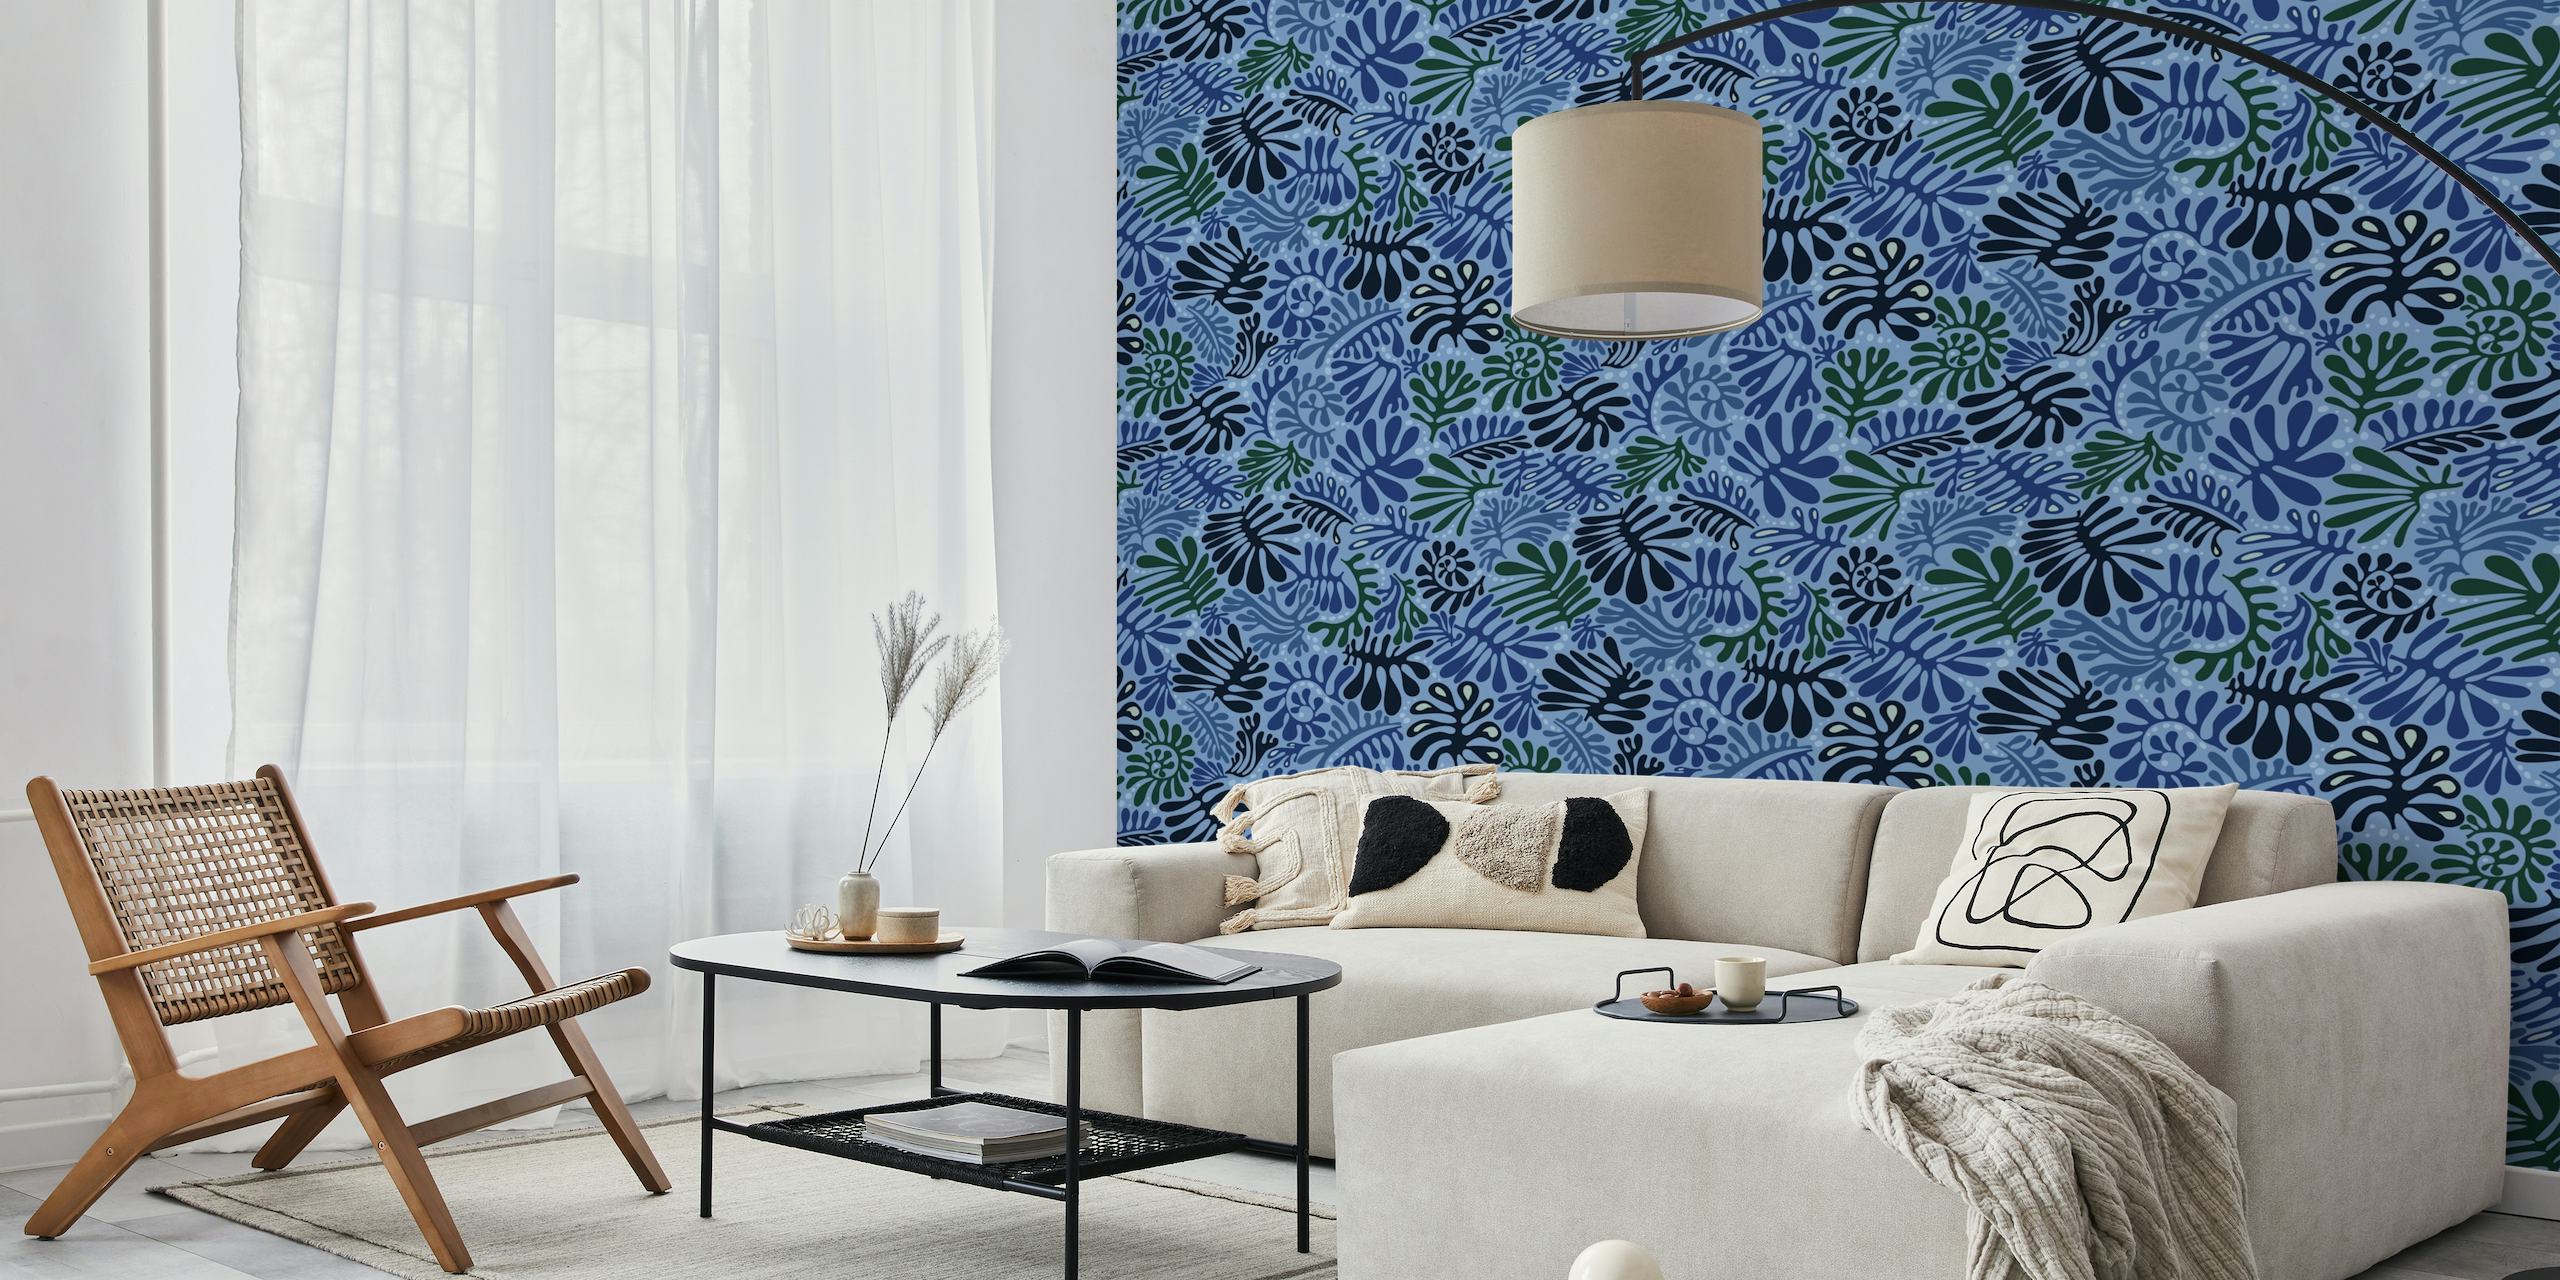 Tyylikäs sininen lehtikuvioinen seinämaalaus happywall.com-sivustolta, jossa on erilaisia sinisen sävyjä ja kasveja.